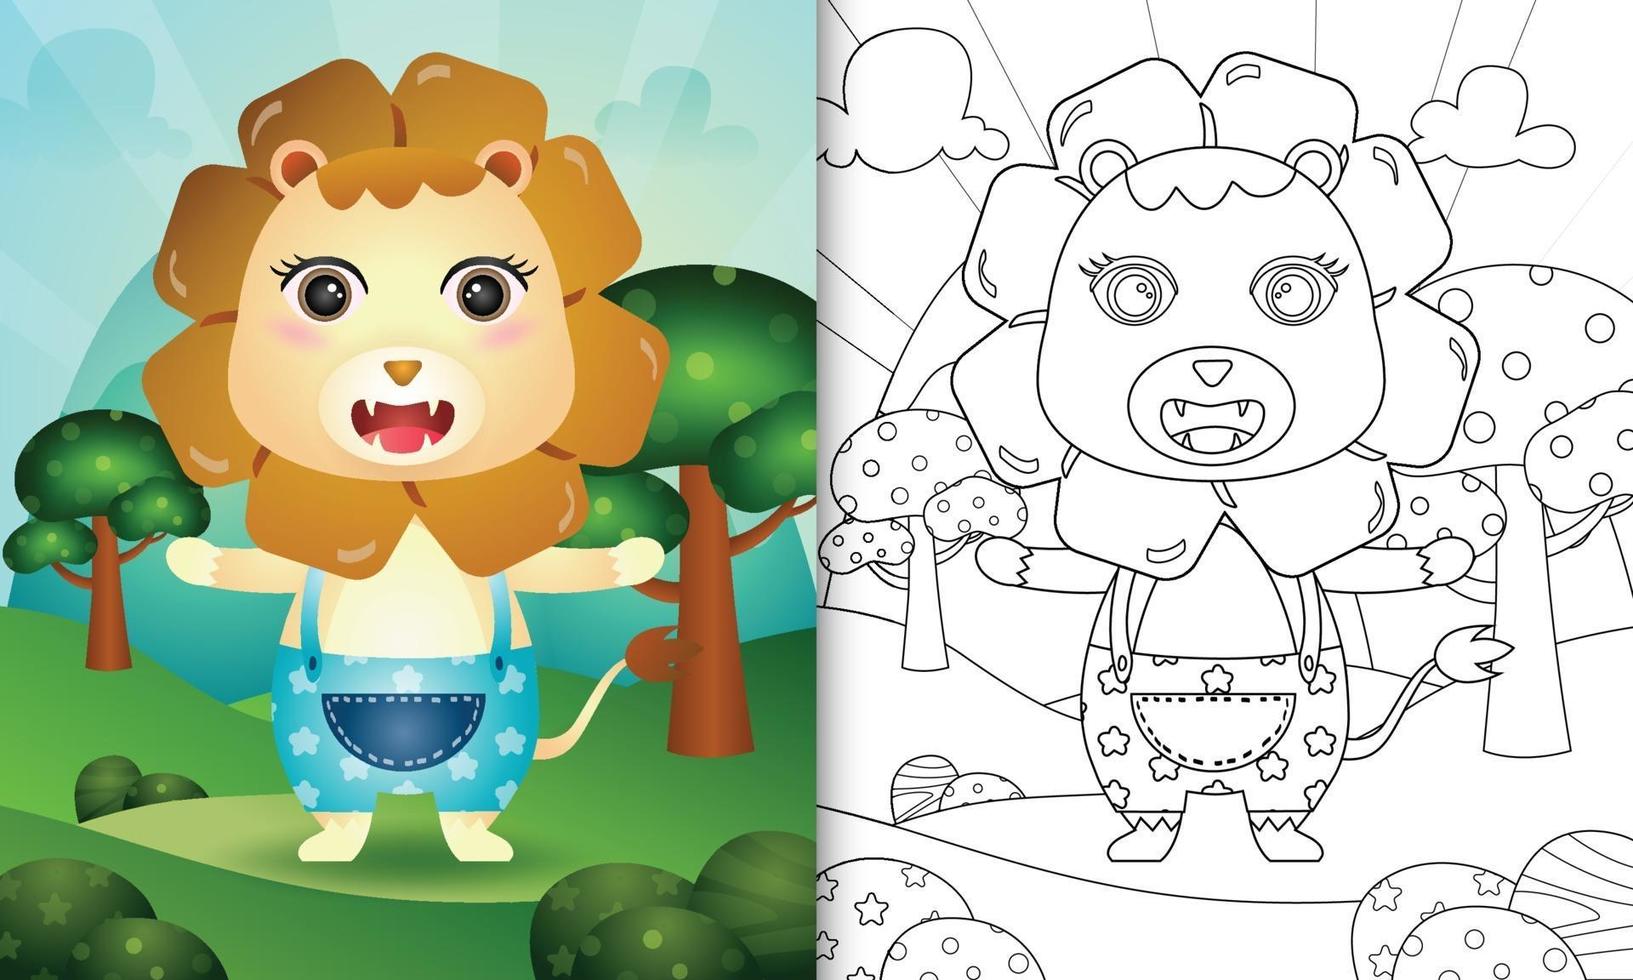 livro de colorir para crianças com uma ilustração de um leão fofo vetor